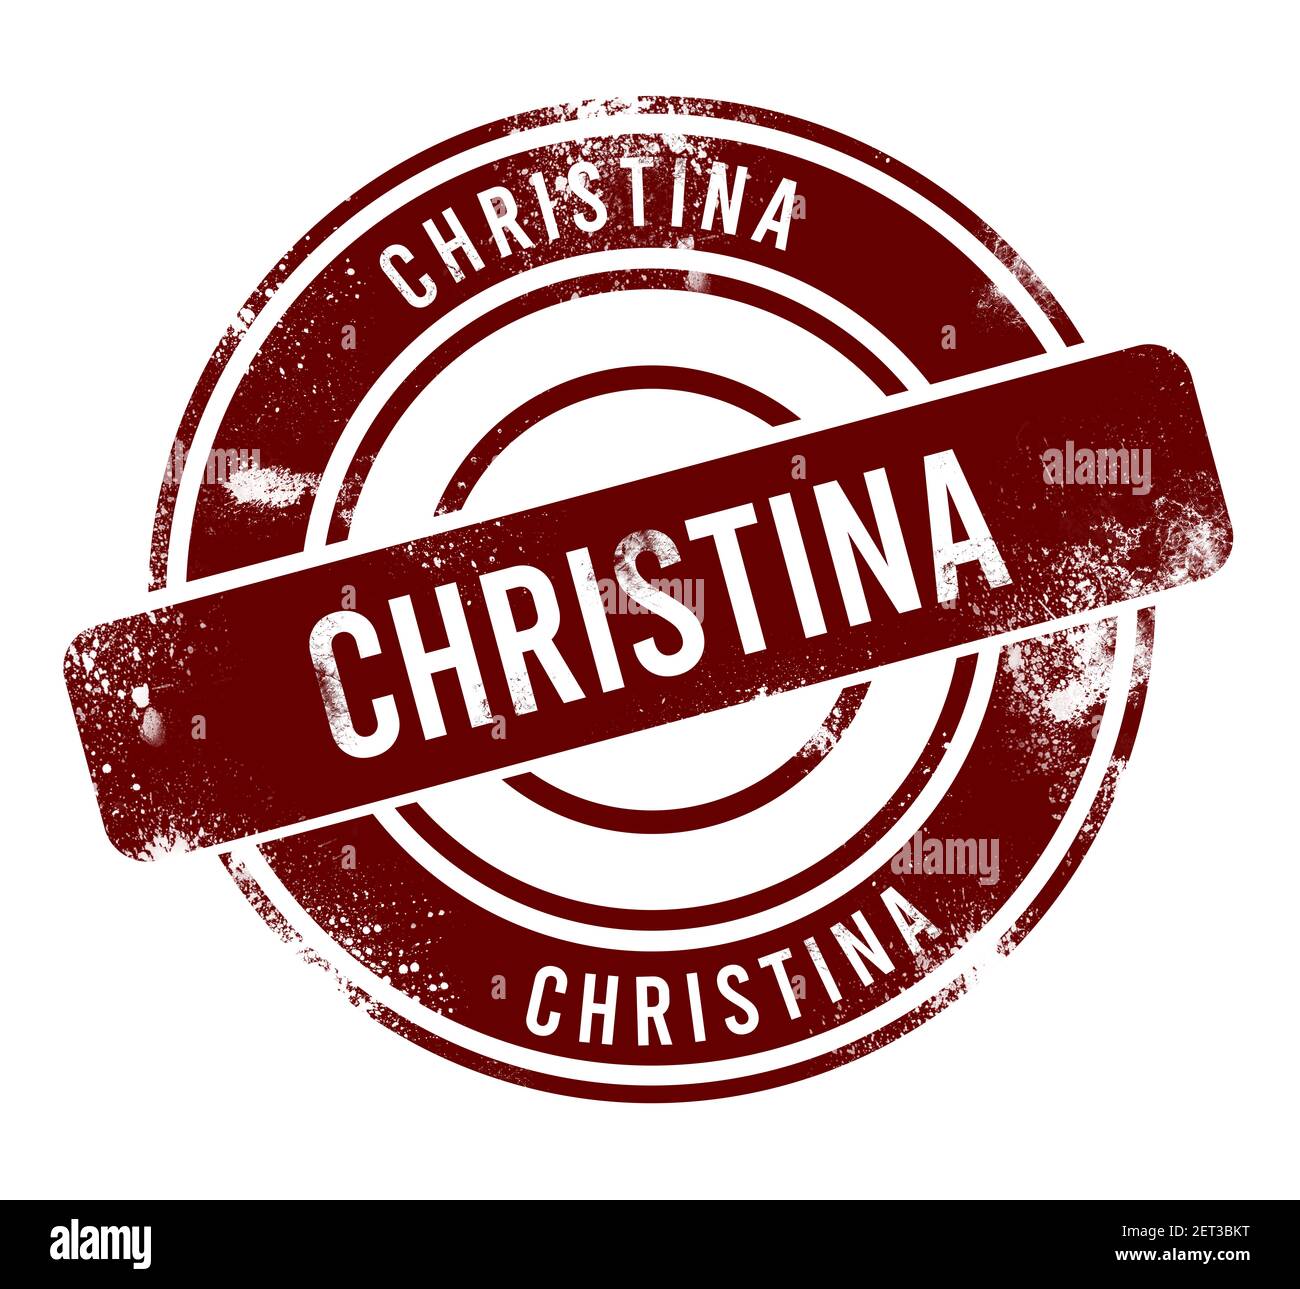 Christina - pulsante rotondo rosso di grunge, timbro Foto Stock